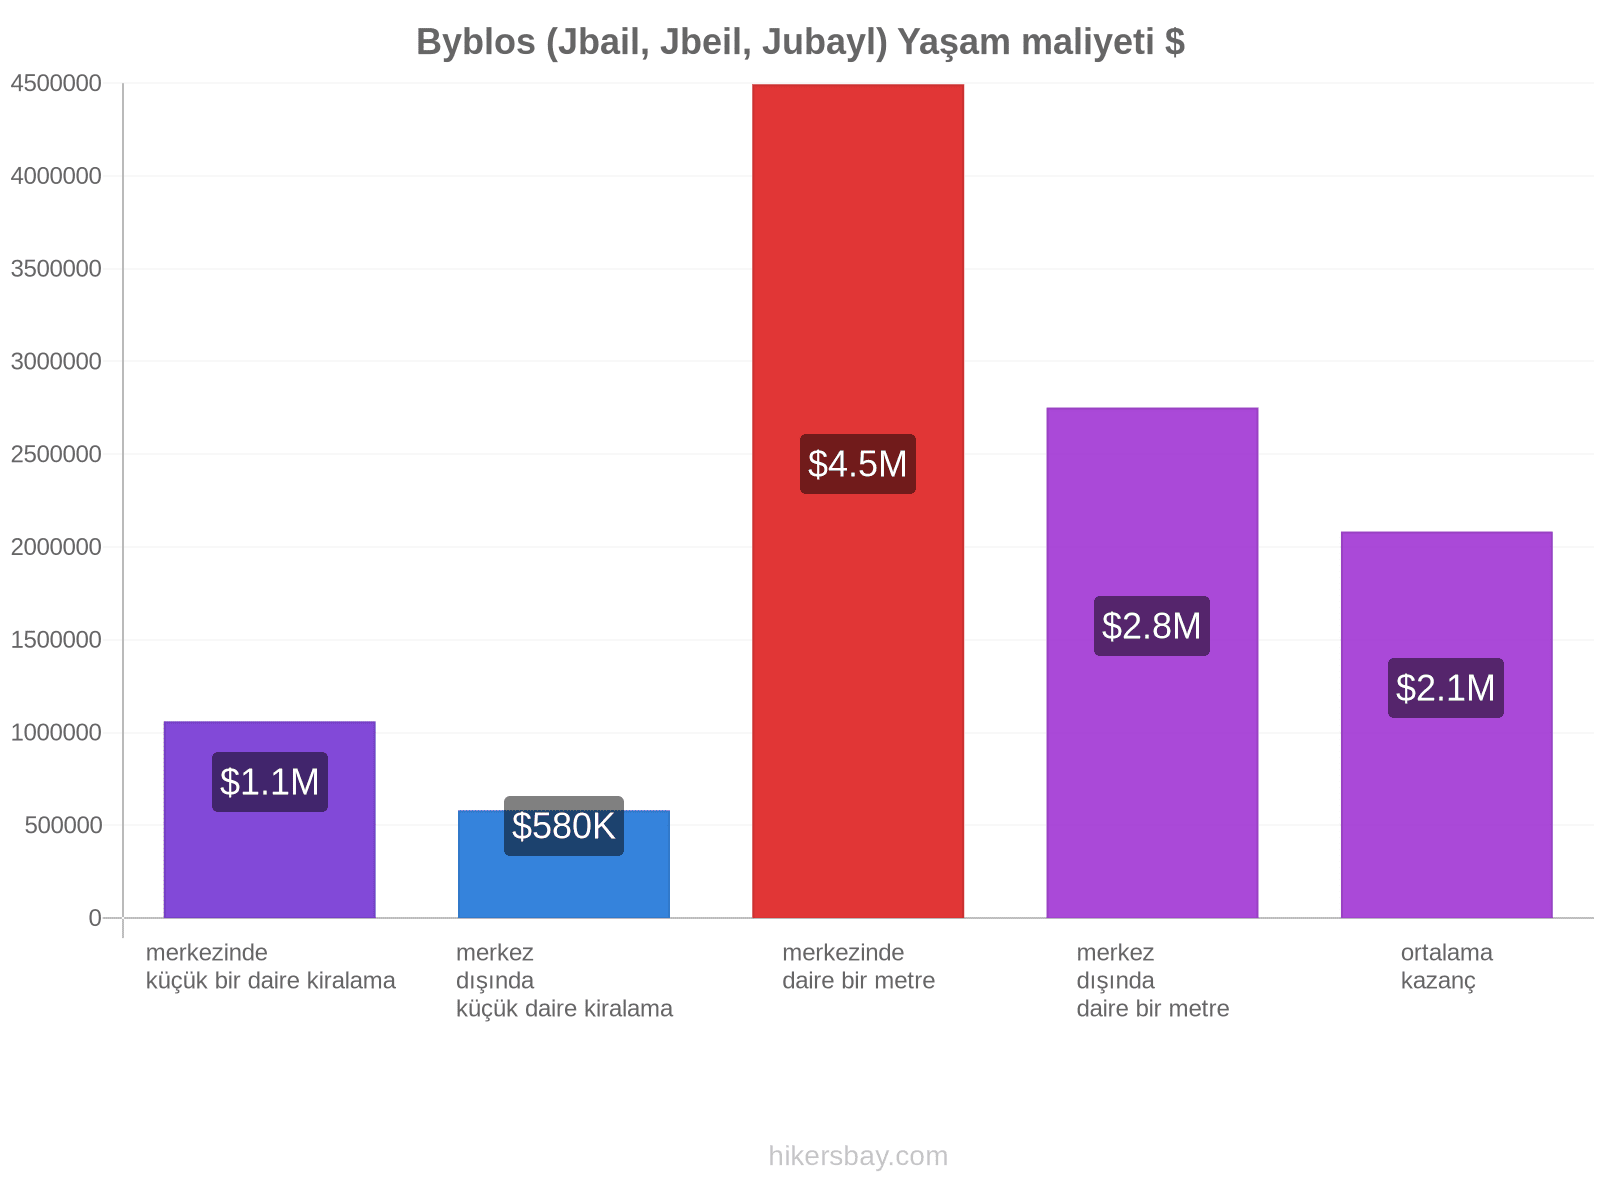 Byblos (Jbail, Jbeil, Jubayl) yaşam maliyeti hikersbay.com